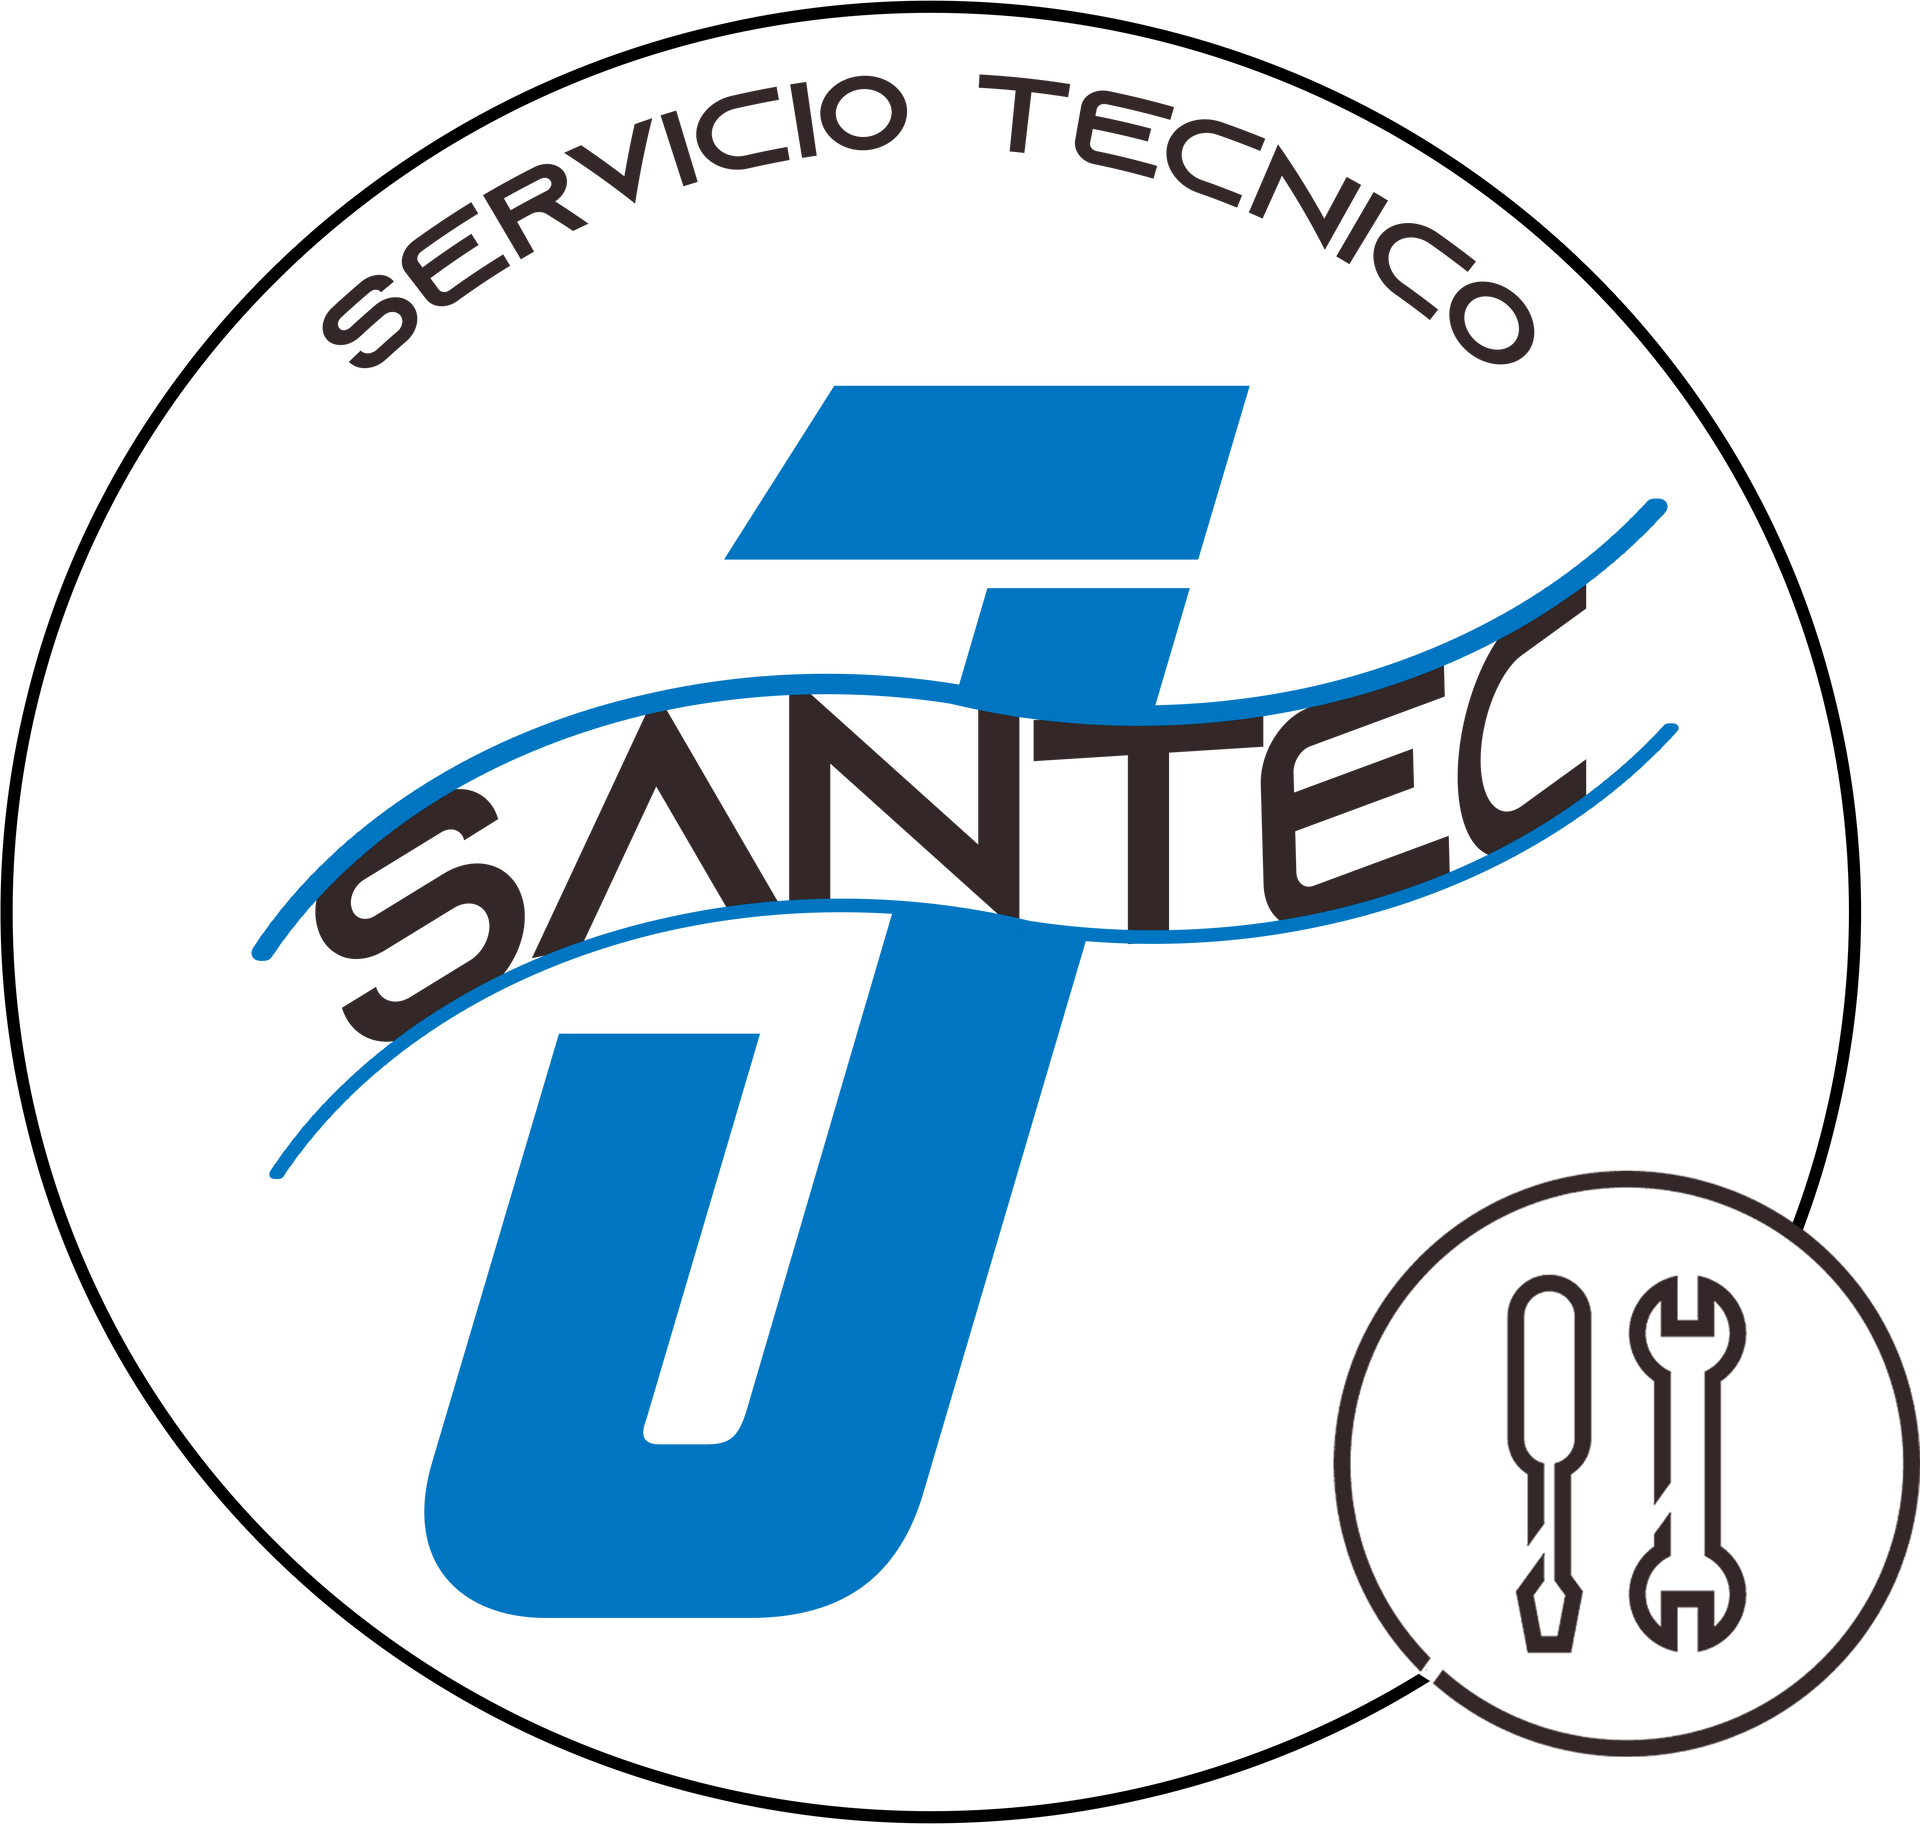 Santec logo